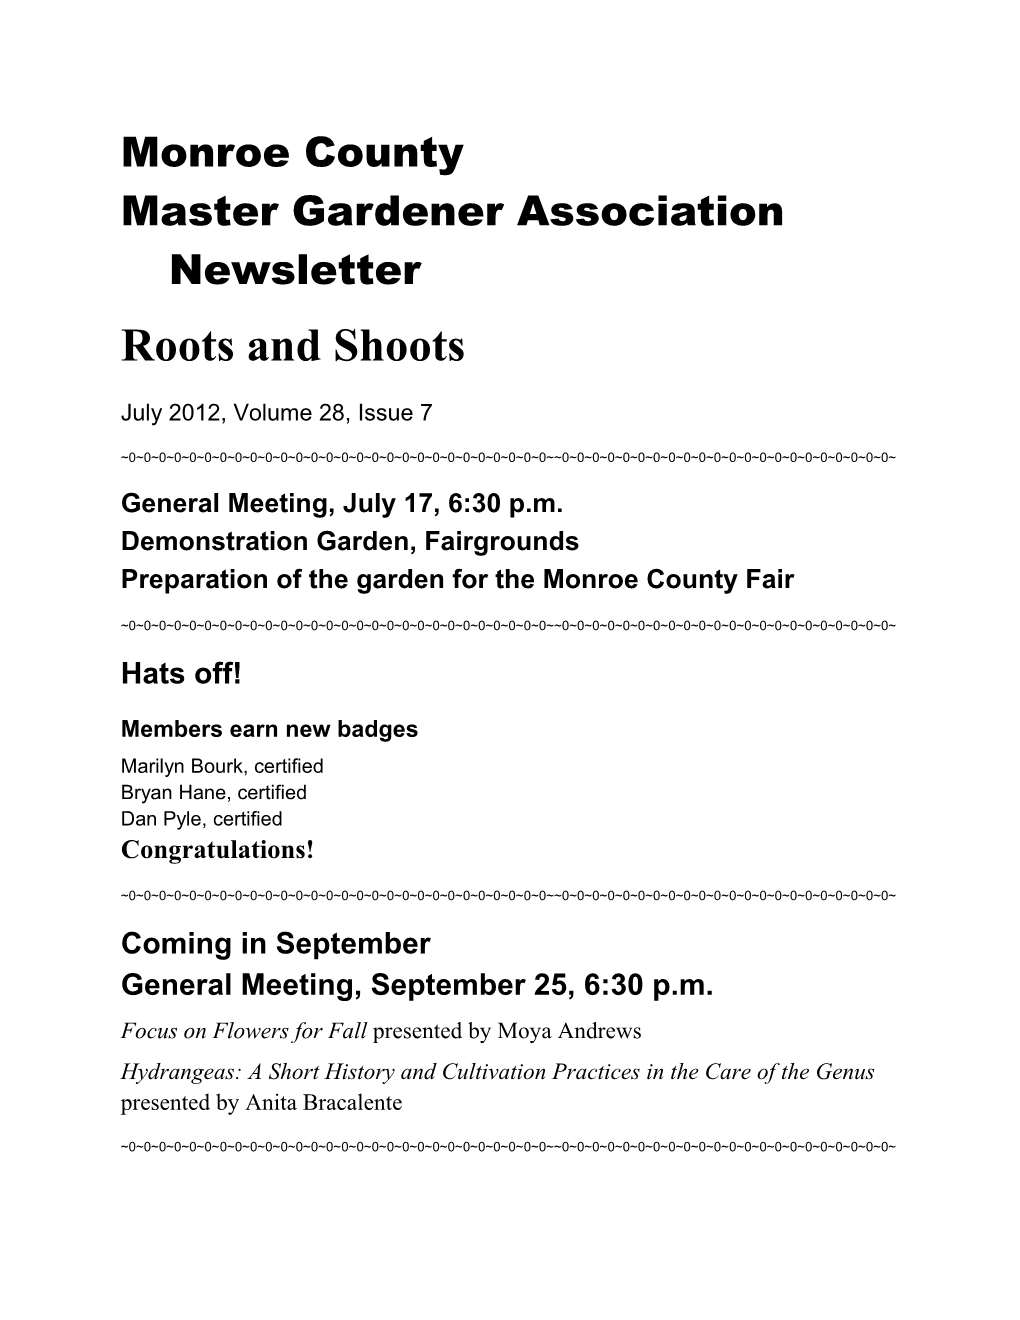 Master Gardener Association Newsletter